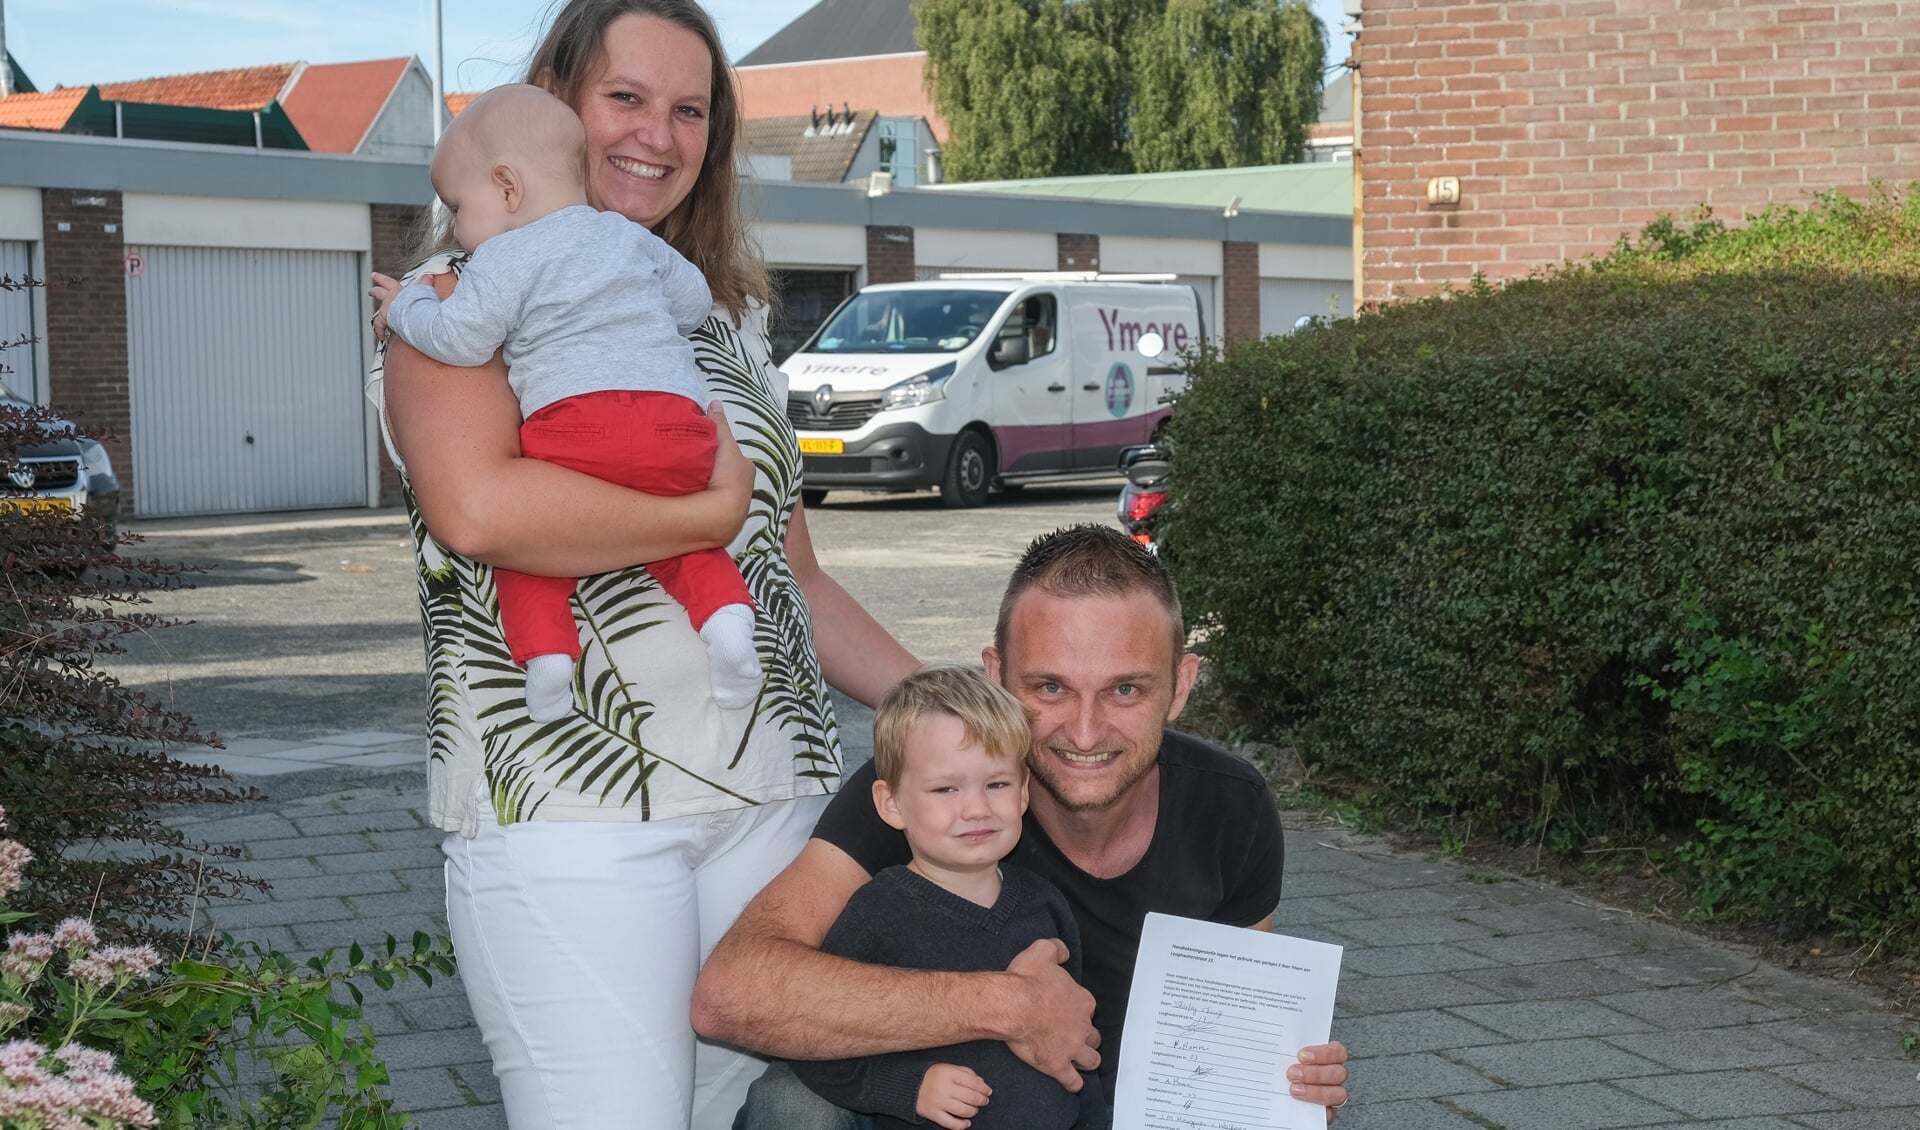 Het gezin Van Diel, met Robert die de handtekeningenactie toont. Op de achtergrond een van de busjes van Ymere die volgens hem de buurt gevaarlijk maken.